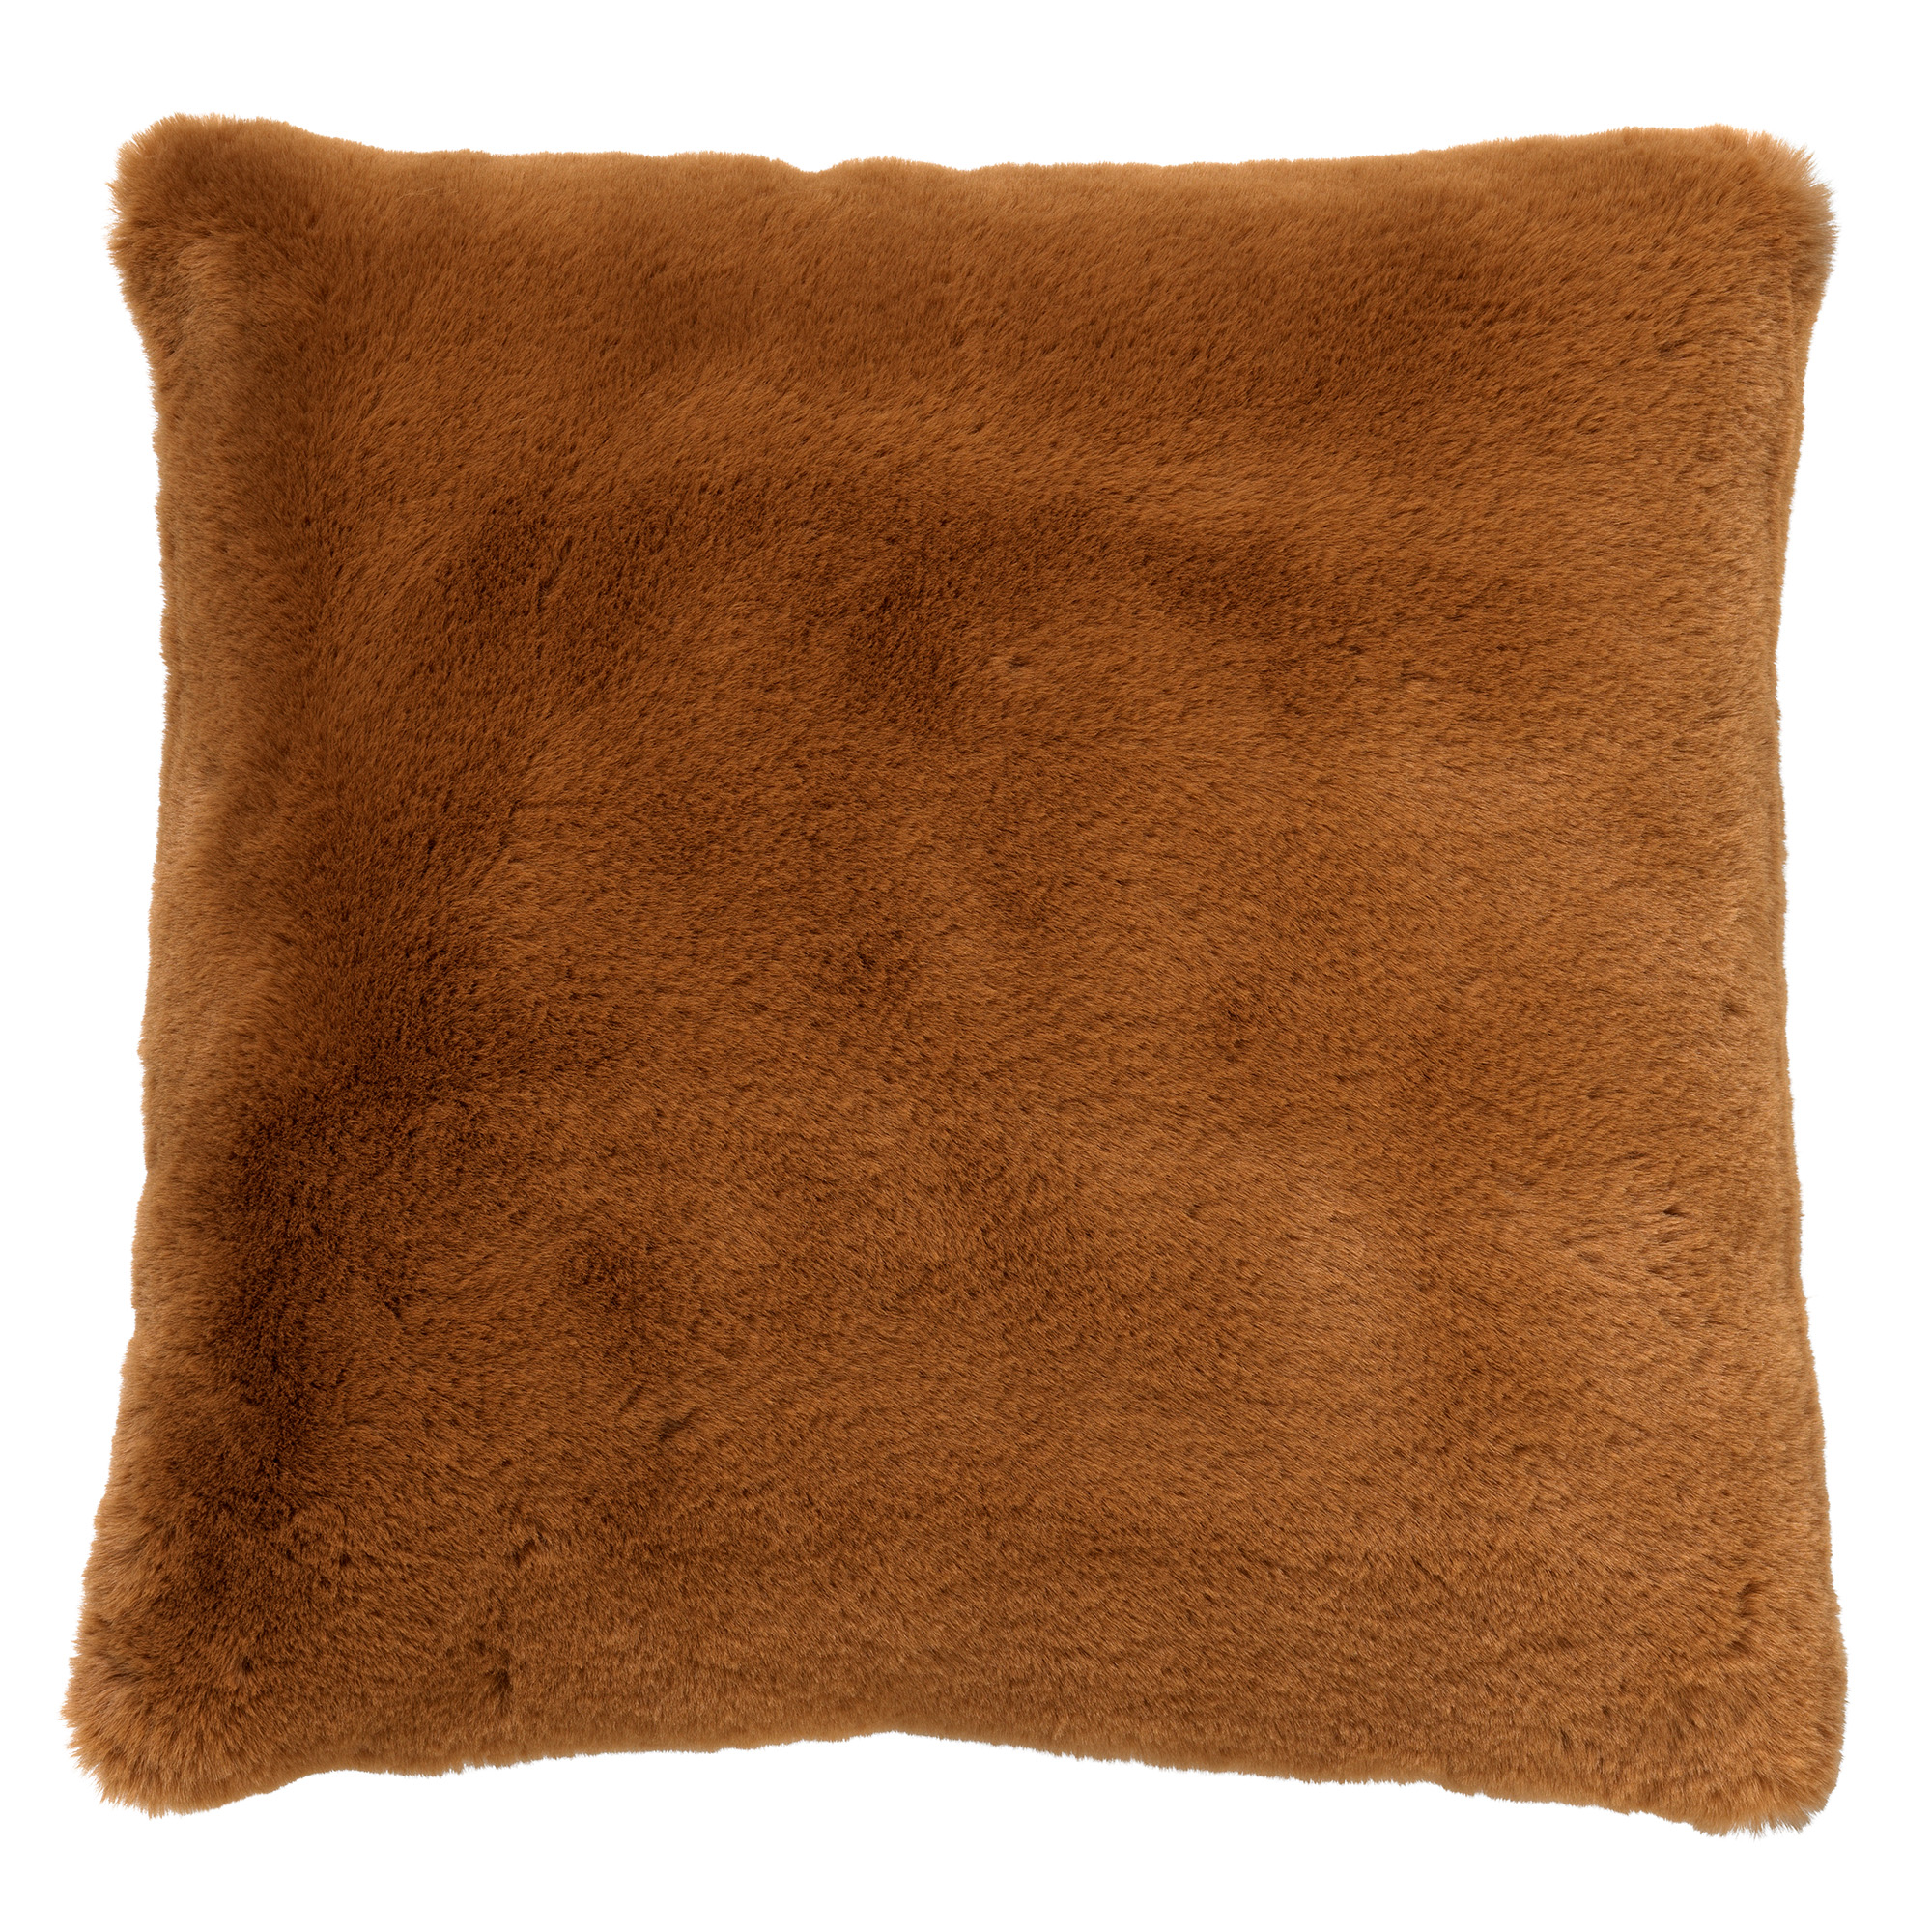 ZAYA - Kussenhoes 45x45 cm - bontlook - effen kleur - Tobacco Brown - bruin